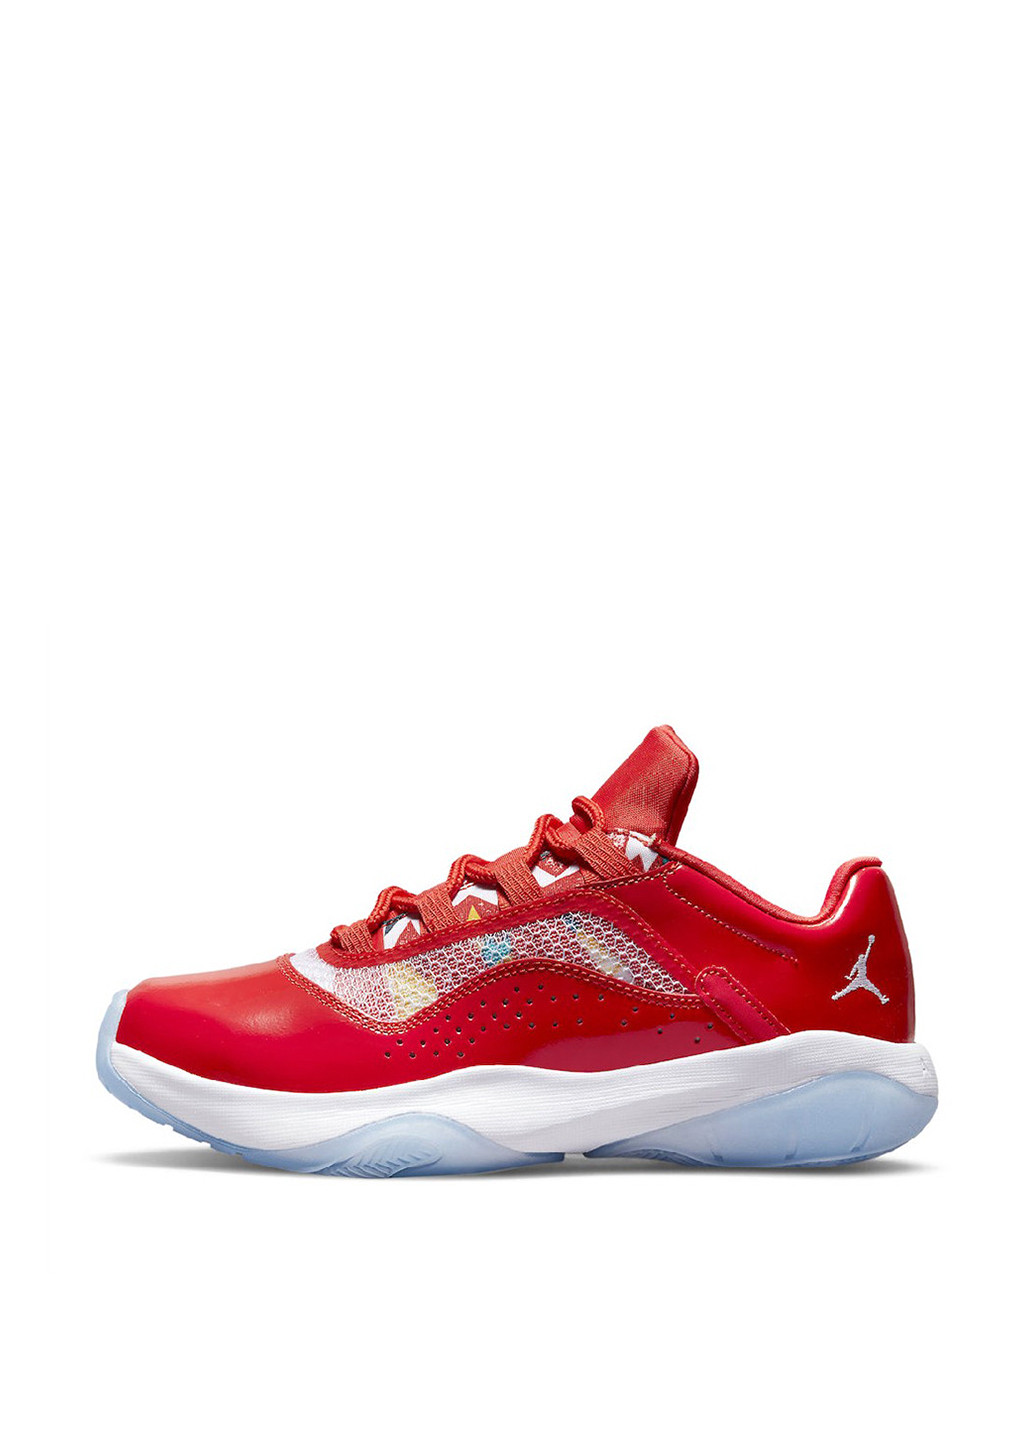 Червоні осінні кросівки dq0928-600_2024 Jordan 11 Cmft Low Gs